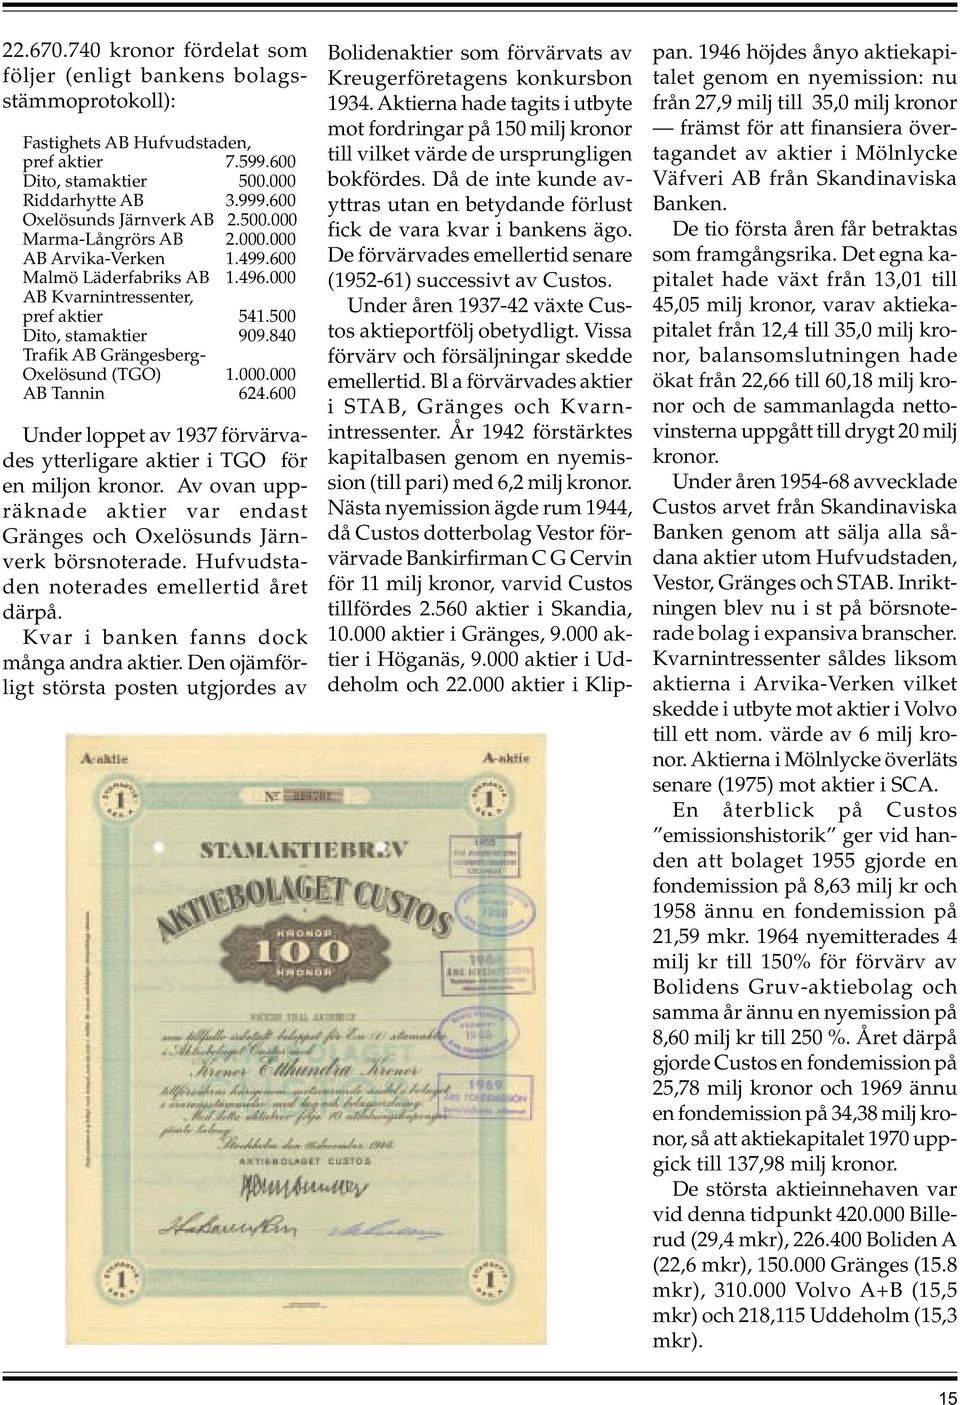 840 Trafik AB Grängesberg- Oxelösund (TGO) 1.000.000 AB Tannin 624.600 Under loppet av 1937 förvärvades ytterligare aktier i TGO för en miljon kronor.